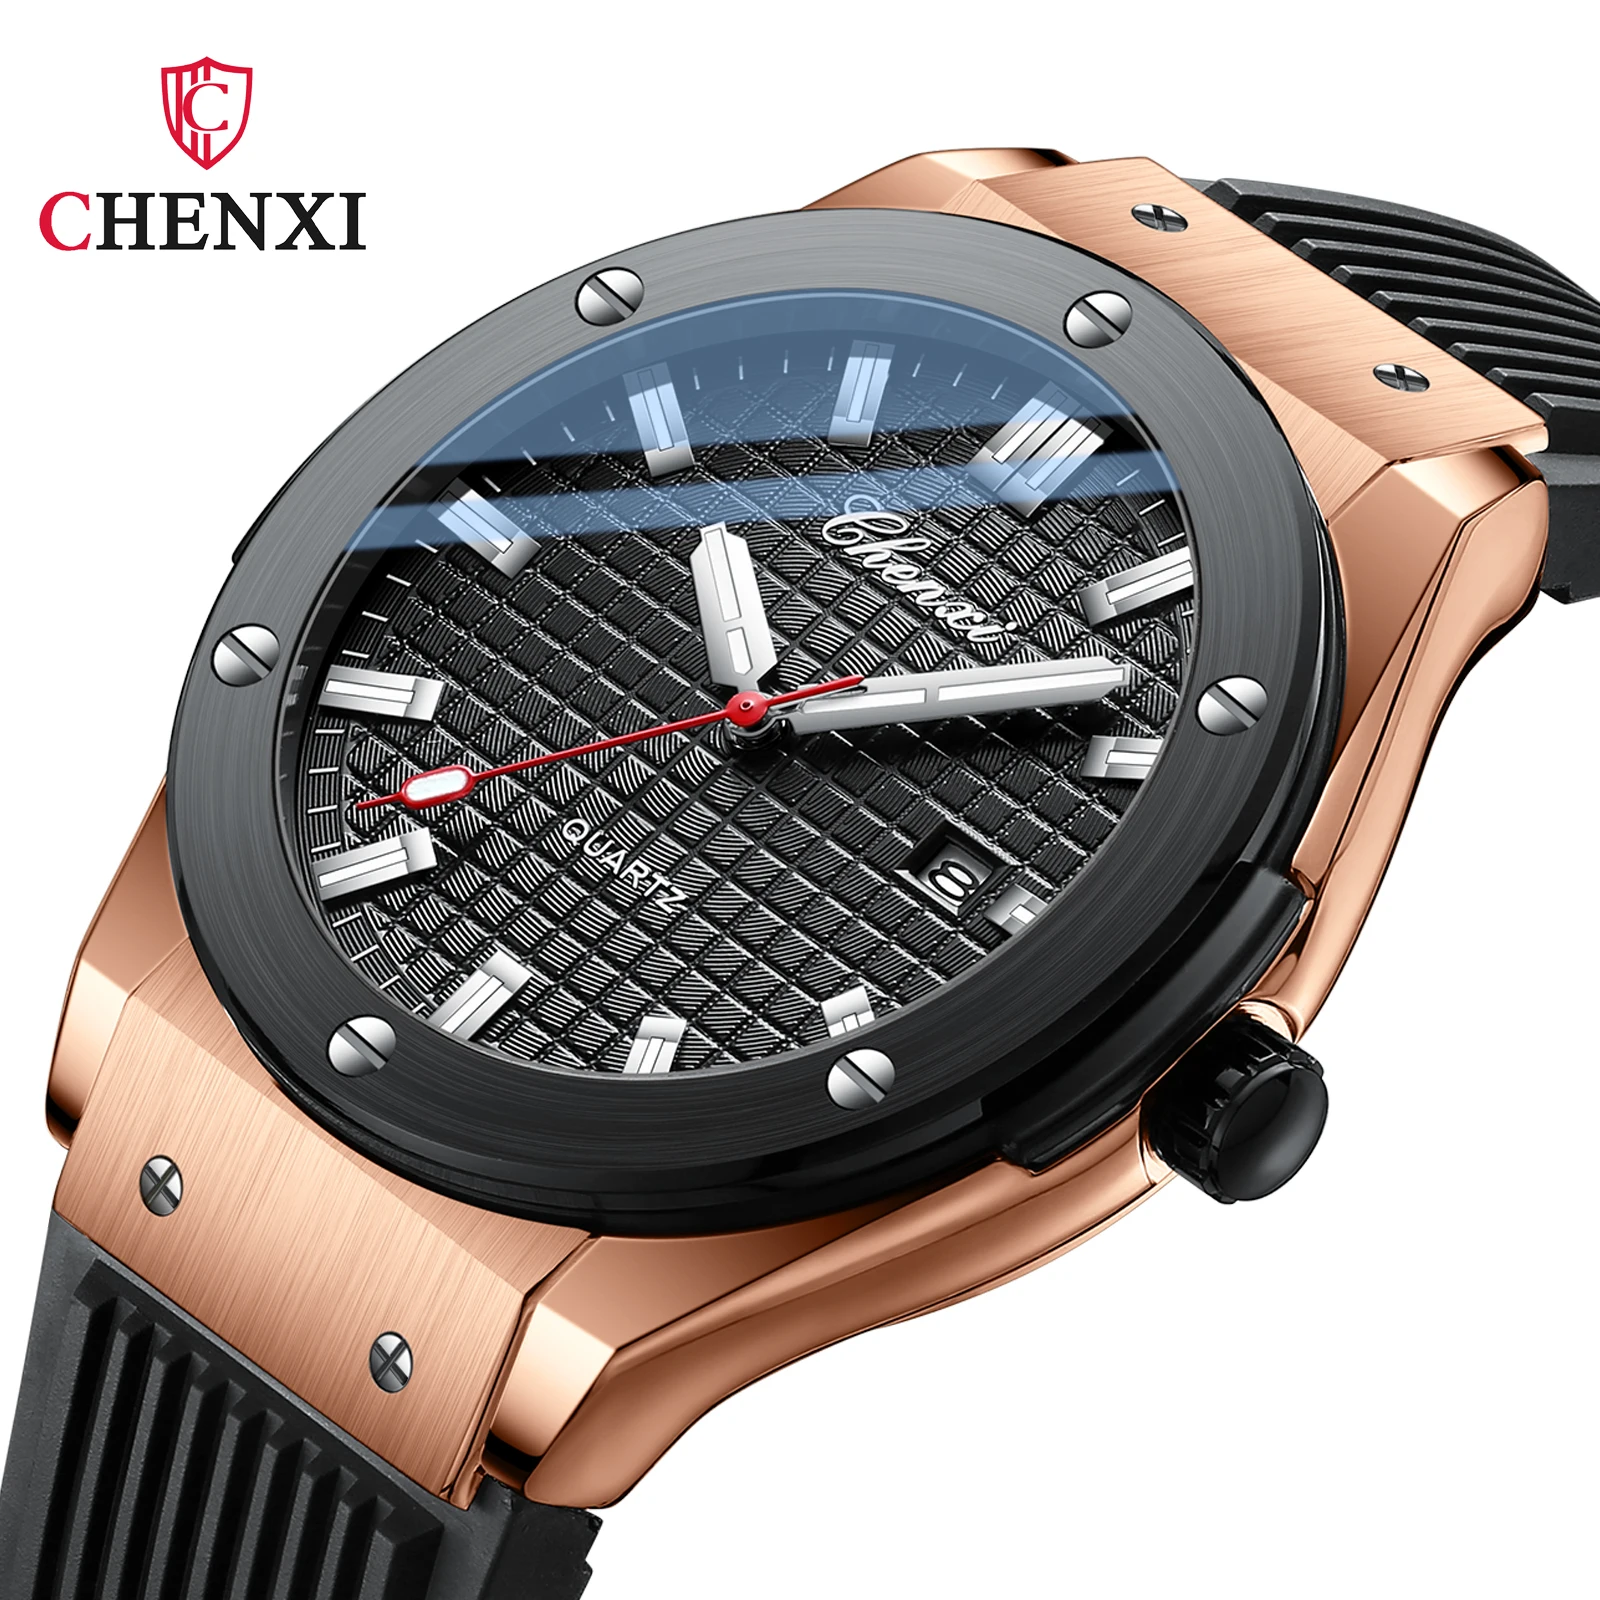 

CHENXI Luxury Casual Watch For Men PU Waterproof Calendar Luminous Hands Quartz men Clock Fashion Male Locomotive Wrist Watch